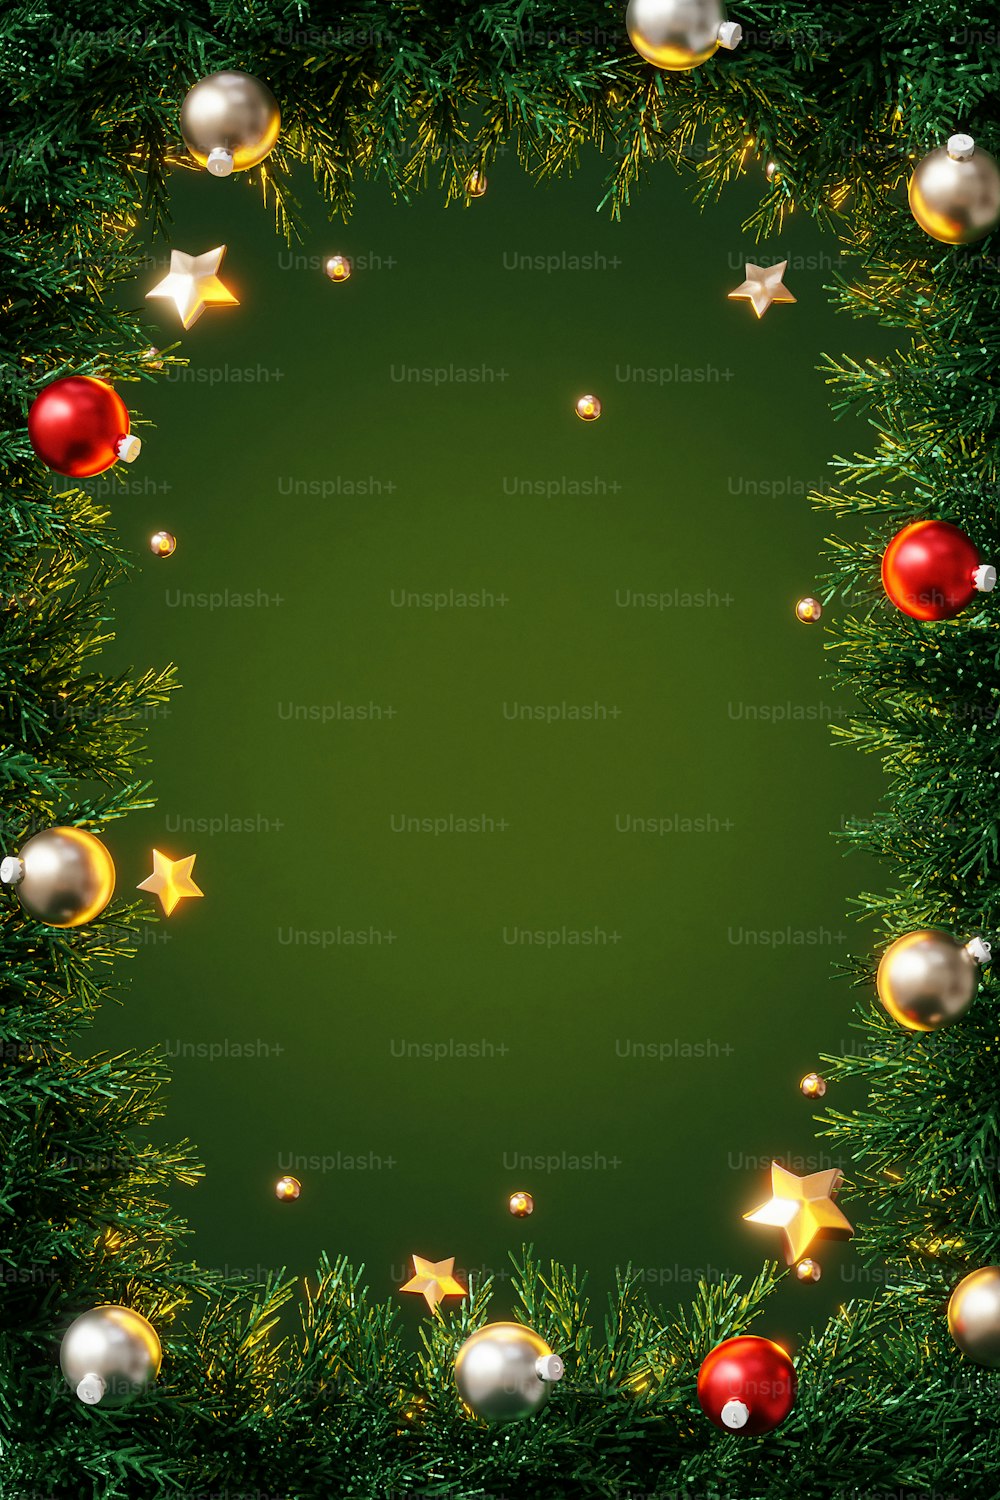 Um fundo verde com ornamentos de Natal e estrelas